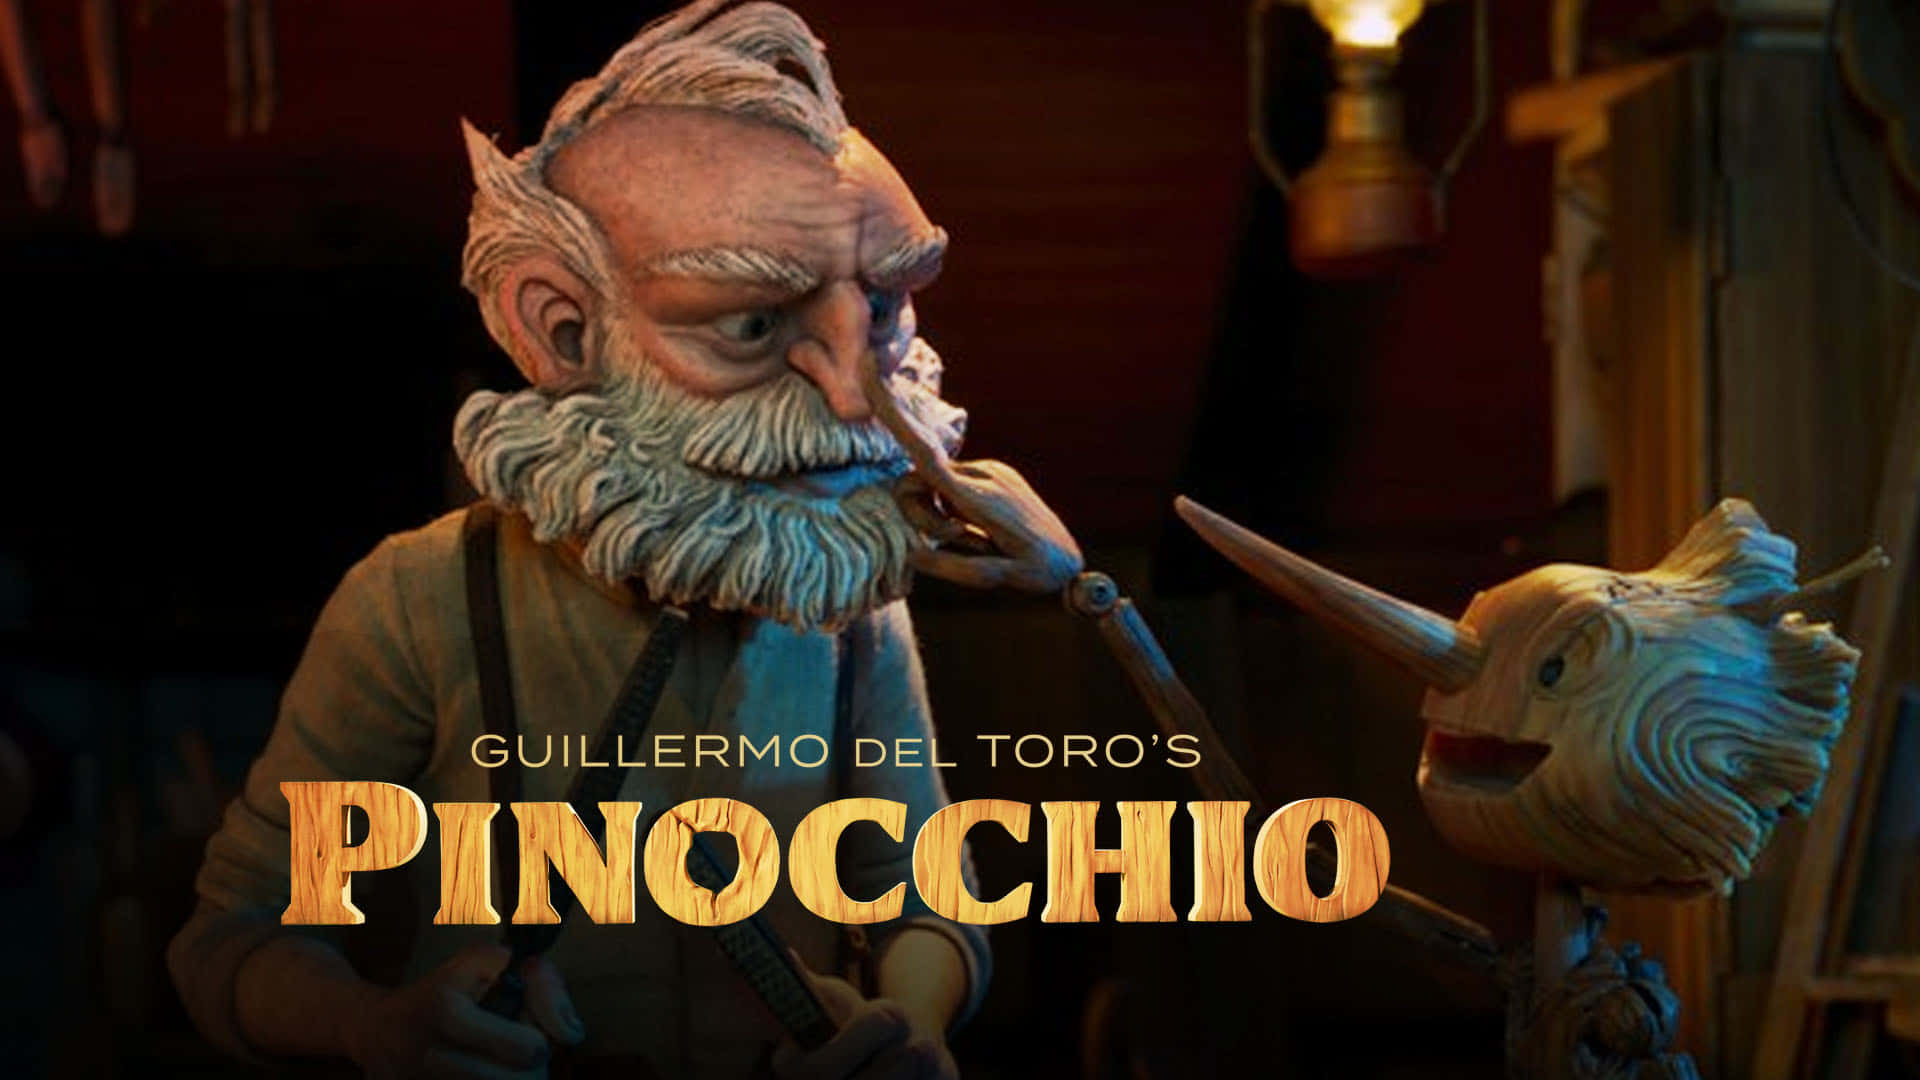 Artistic depiction of Guillermo Del Toro's Pinocchio in vibrant colors Wallpaper